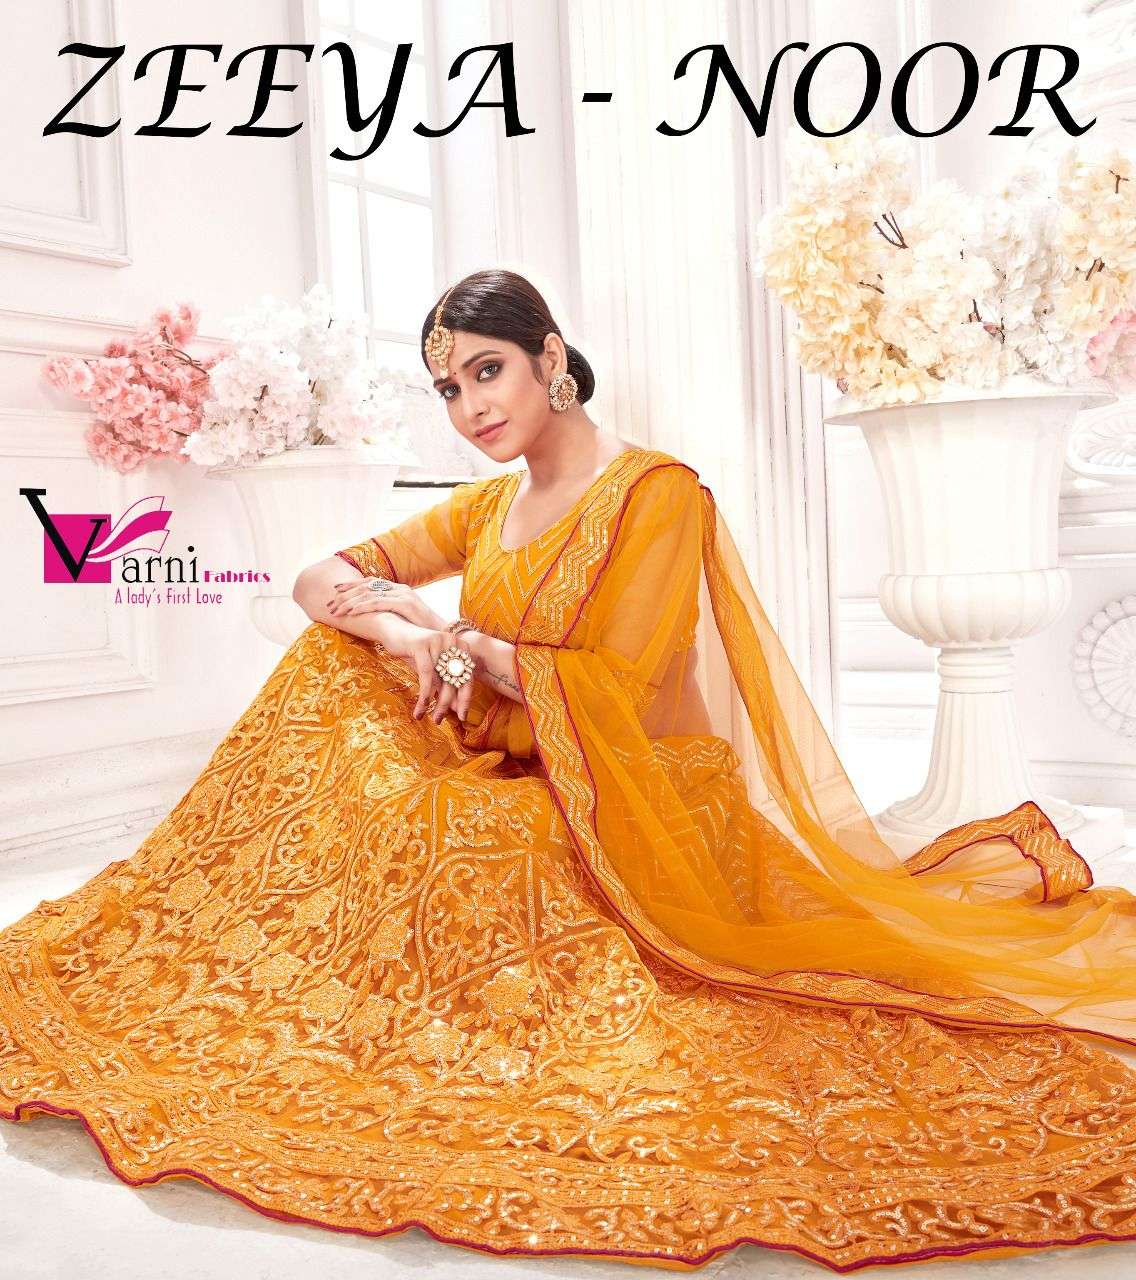 varni Fabrics Zeeya Noor Exclusive Ethnic Wear Lehenga Choli Collection